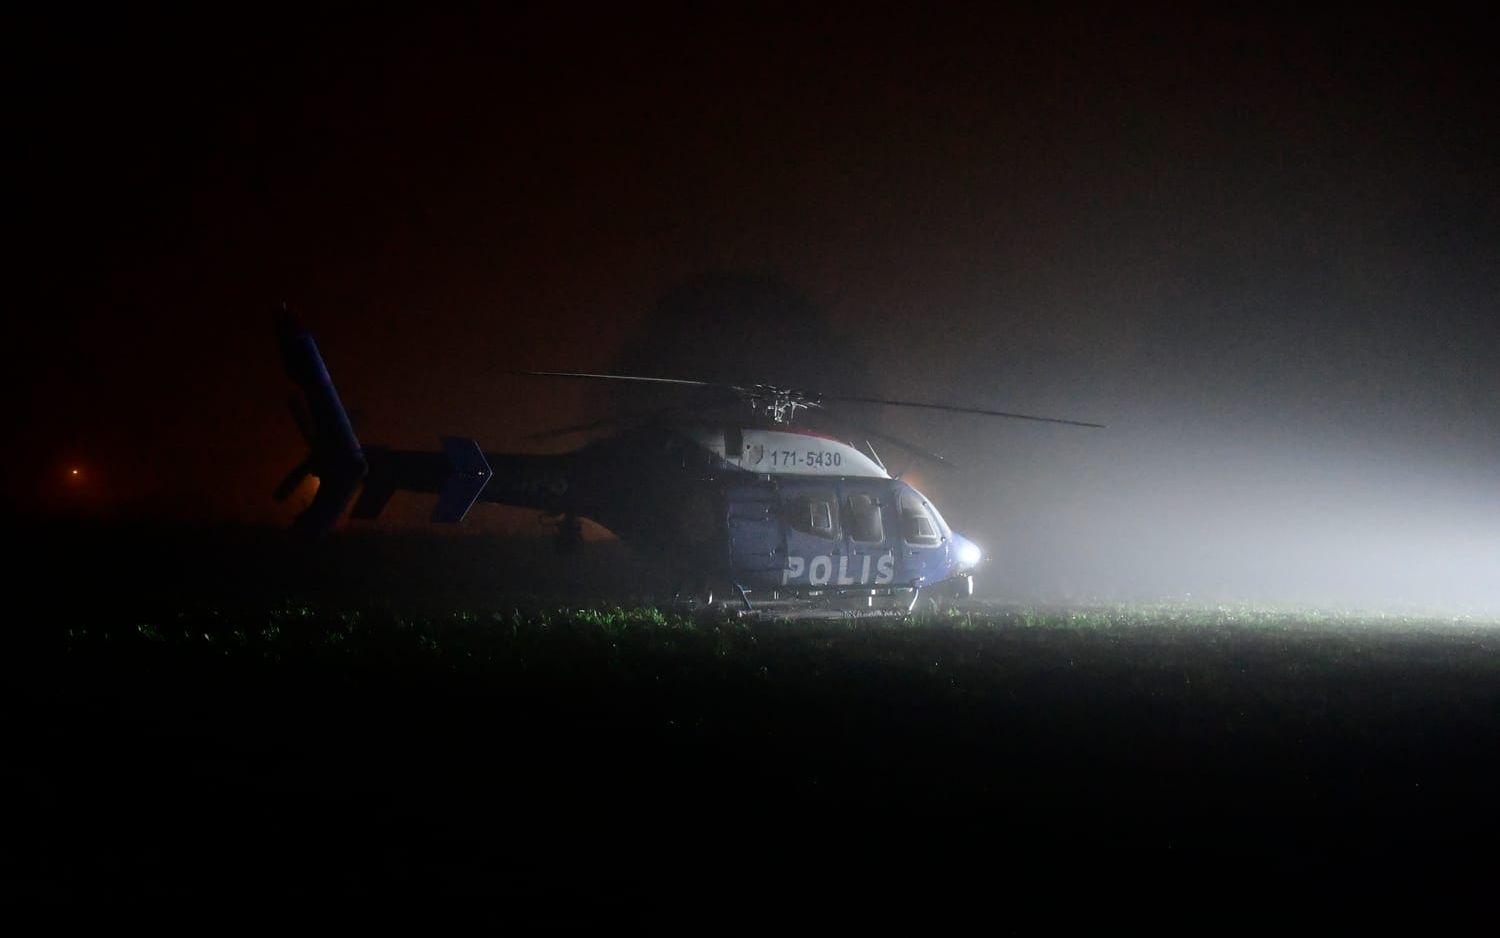 Dimman ställer till det i eftersöket då polisens helikopter inte kan flyga. 